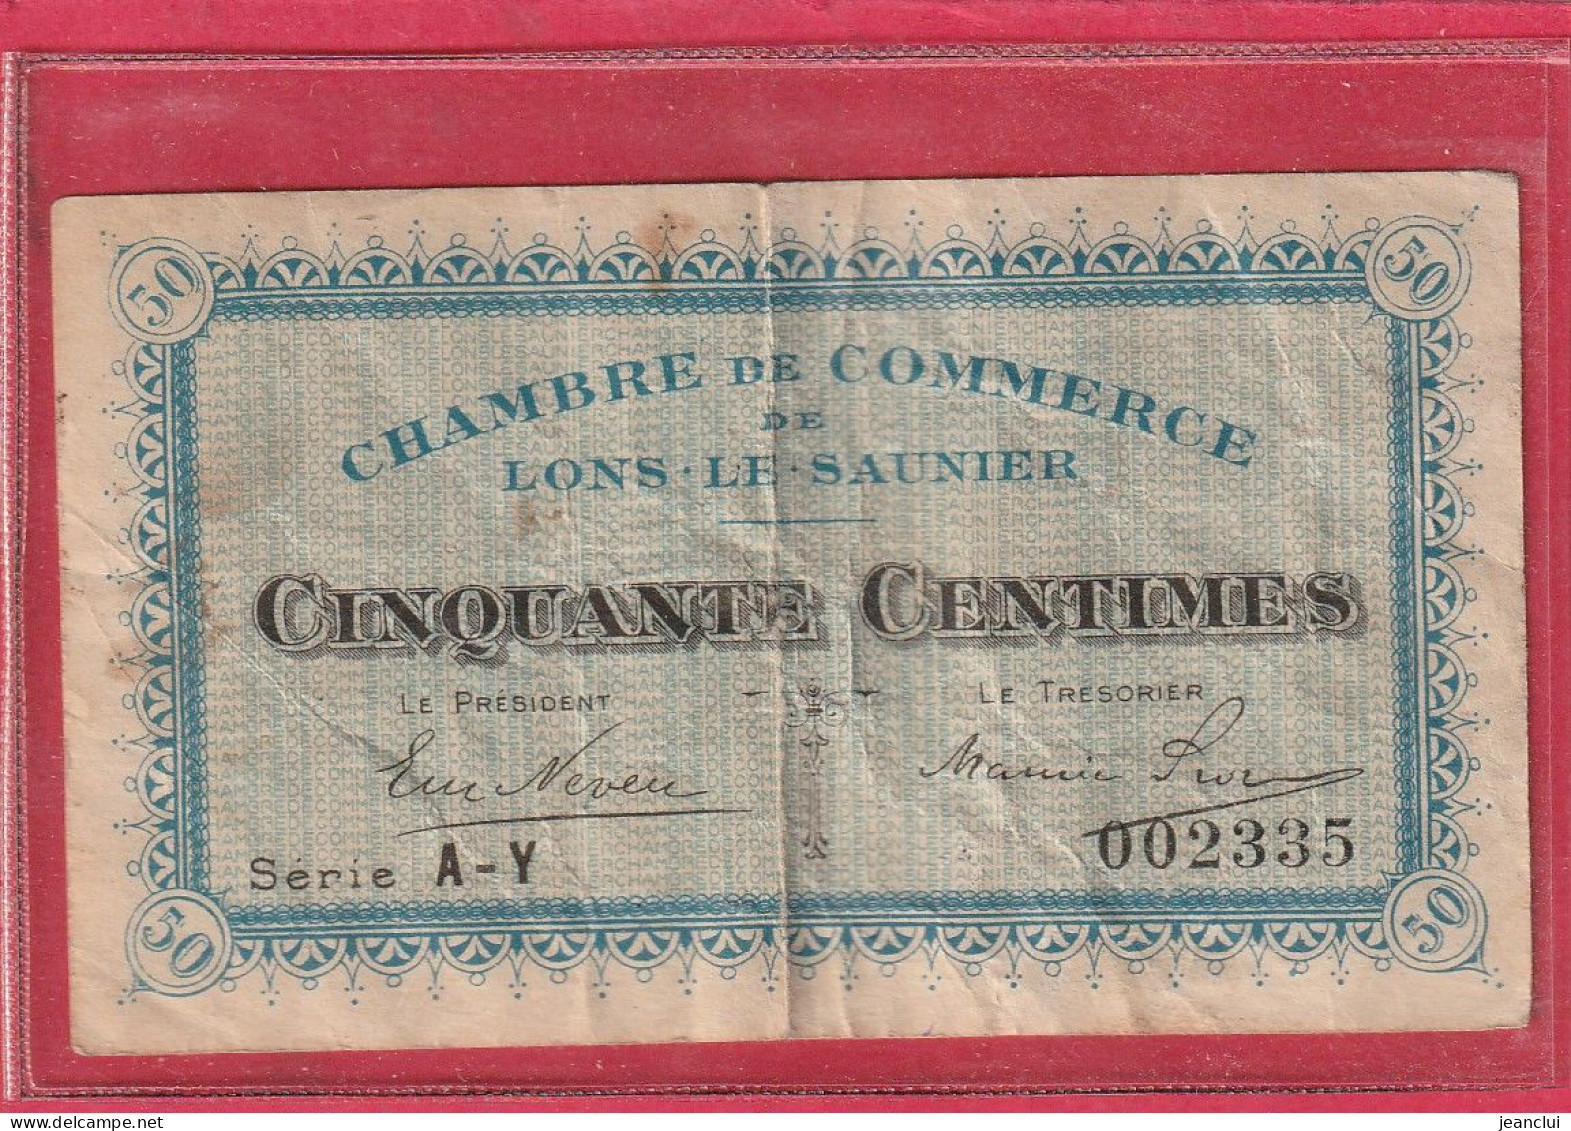 CHAMBRE DE COMMERCE DE LONS-LE-SAUNIER . 50 Centimes   . SERIE  A-Y  .  N° 002335  .  2 SCANNES  .  BILLET USITE - Chambre De Commerce